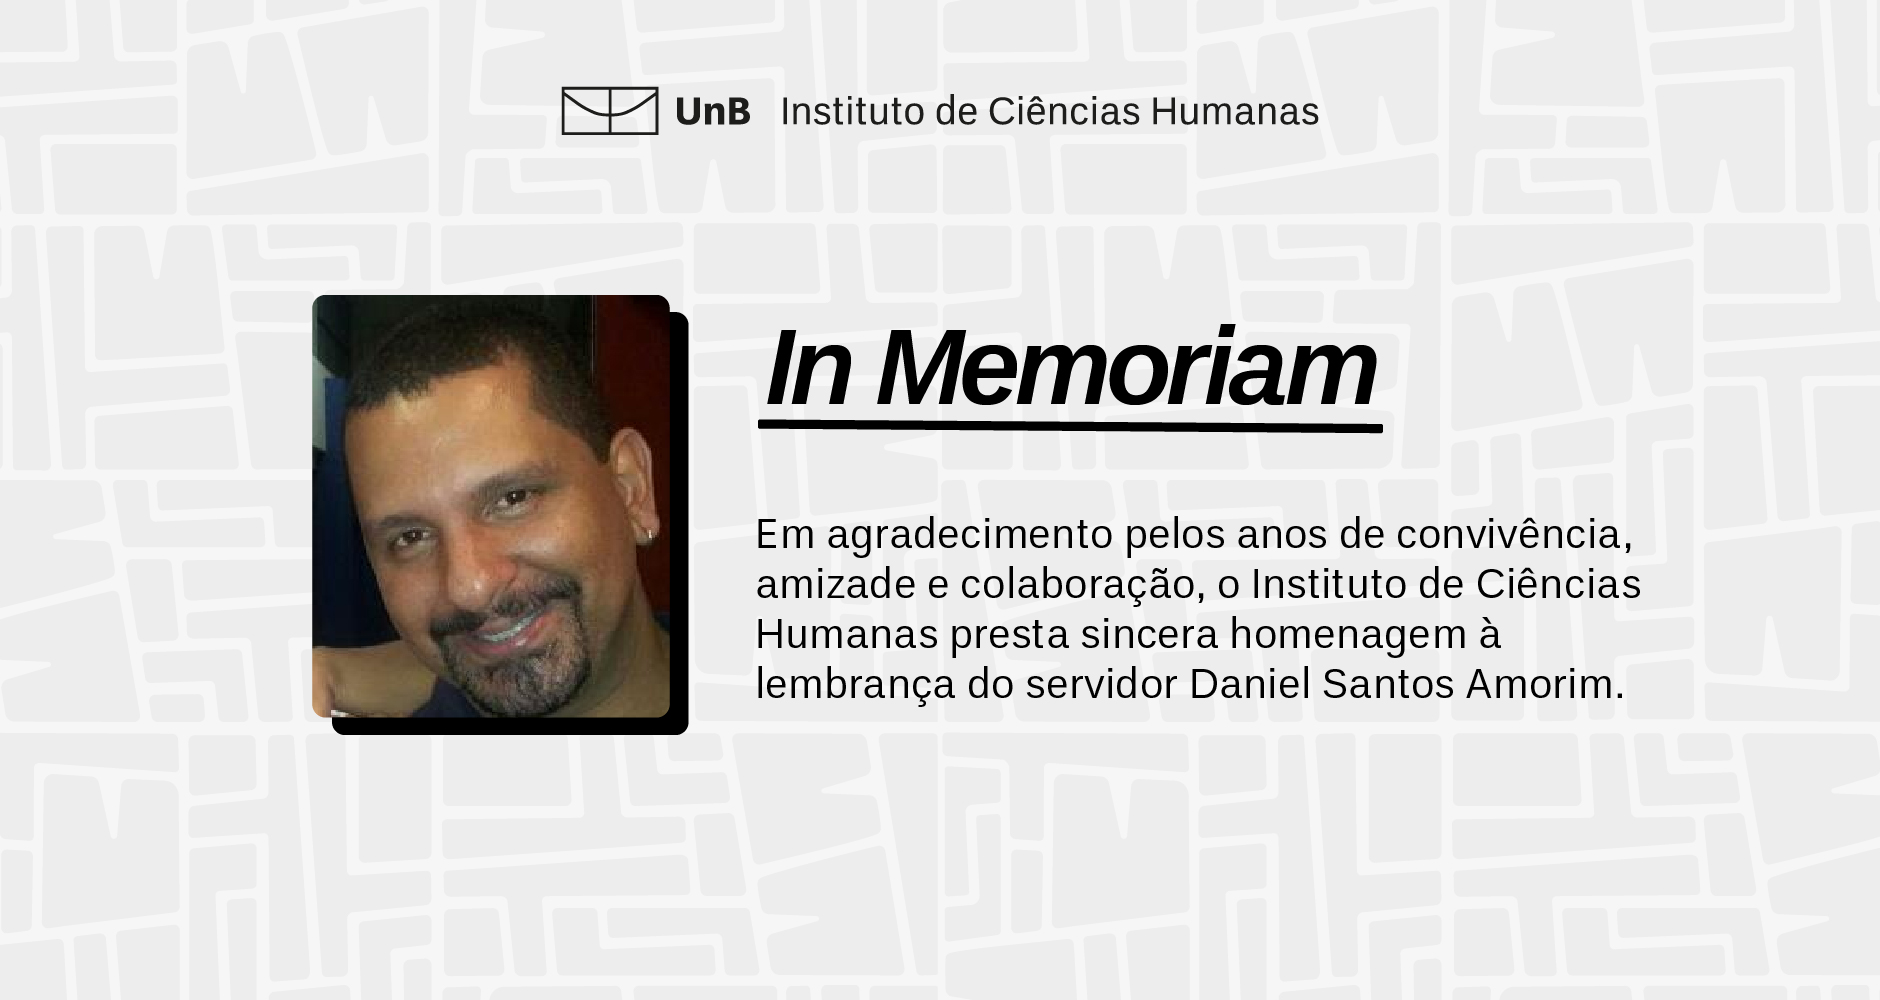 In Memoriam - Daniel Santos Amorim